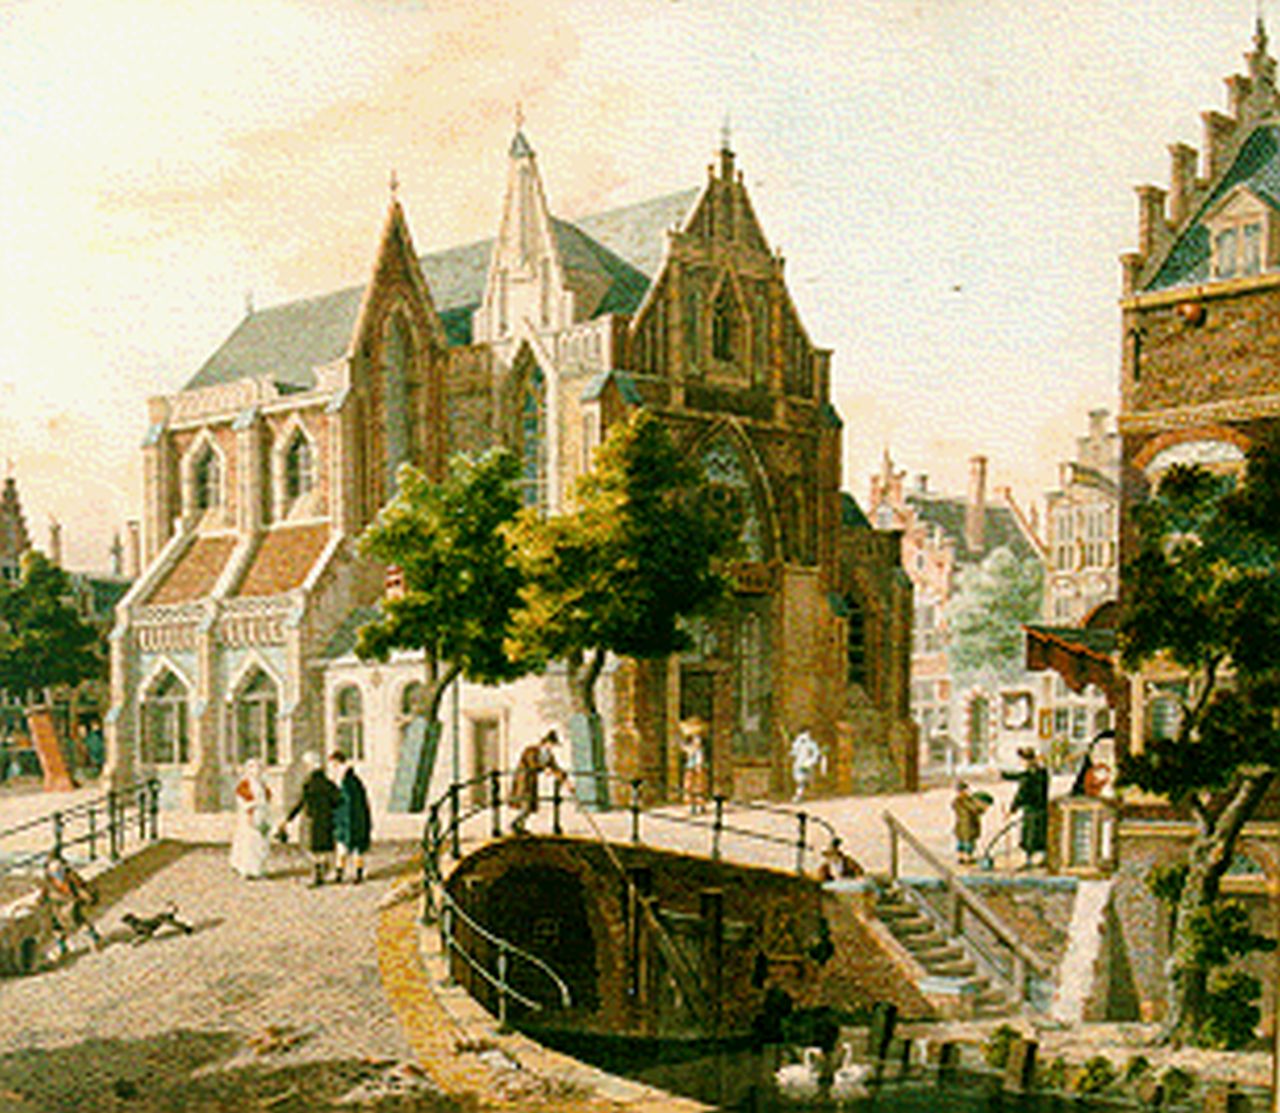 Verheijen J.H.  | Jan Hendrik Verheijen, Stadsgezicht met wandelaars, aquarel op papier 36,0 x 41,5 cm, gesigneerd middenonder en gedateerd 1811